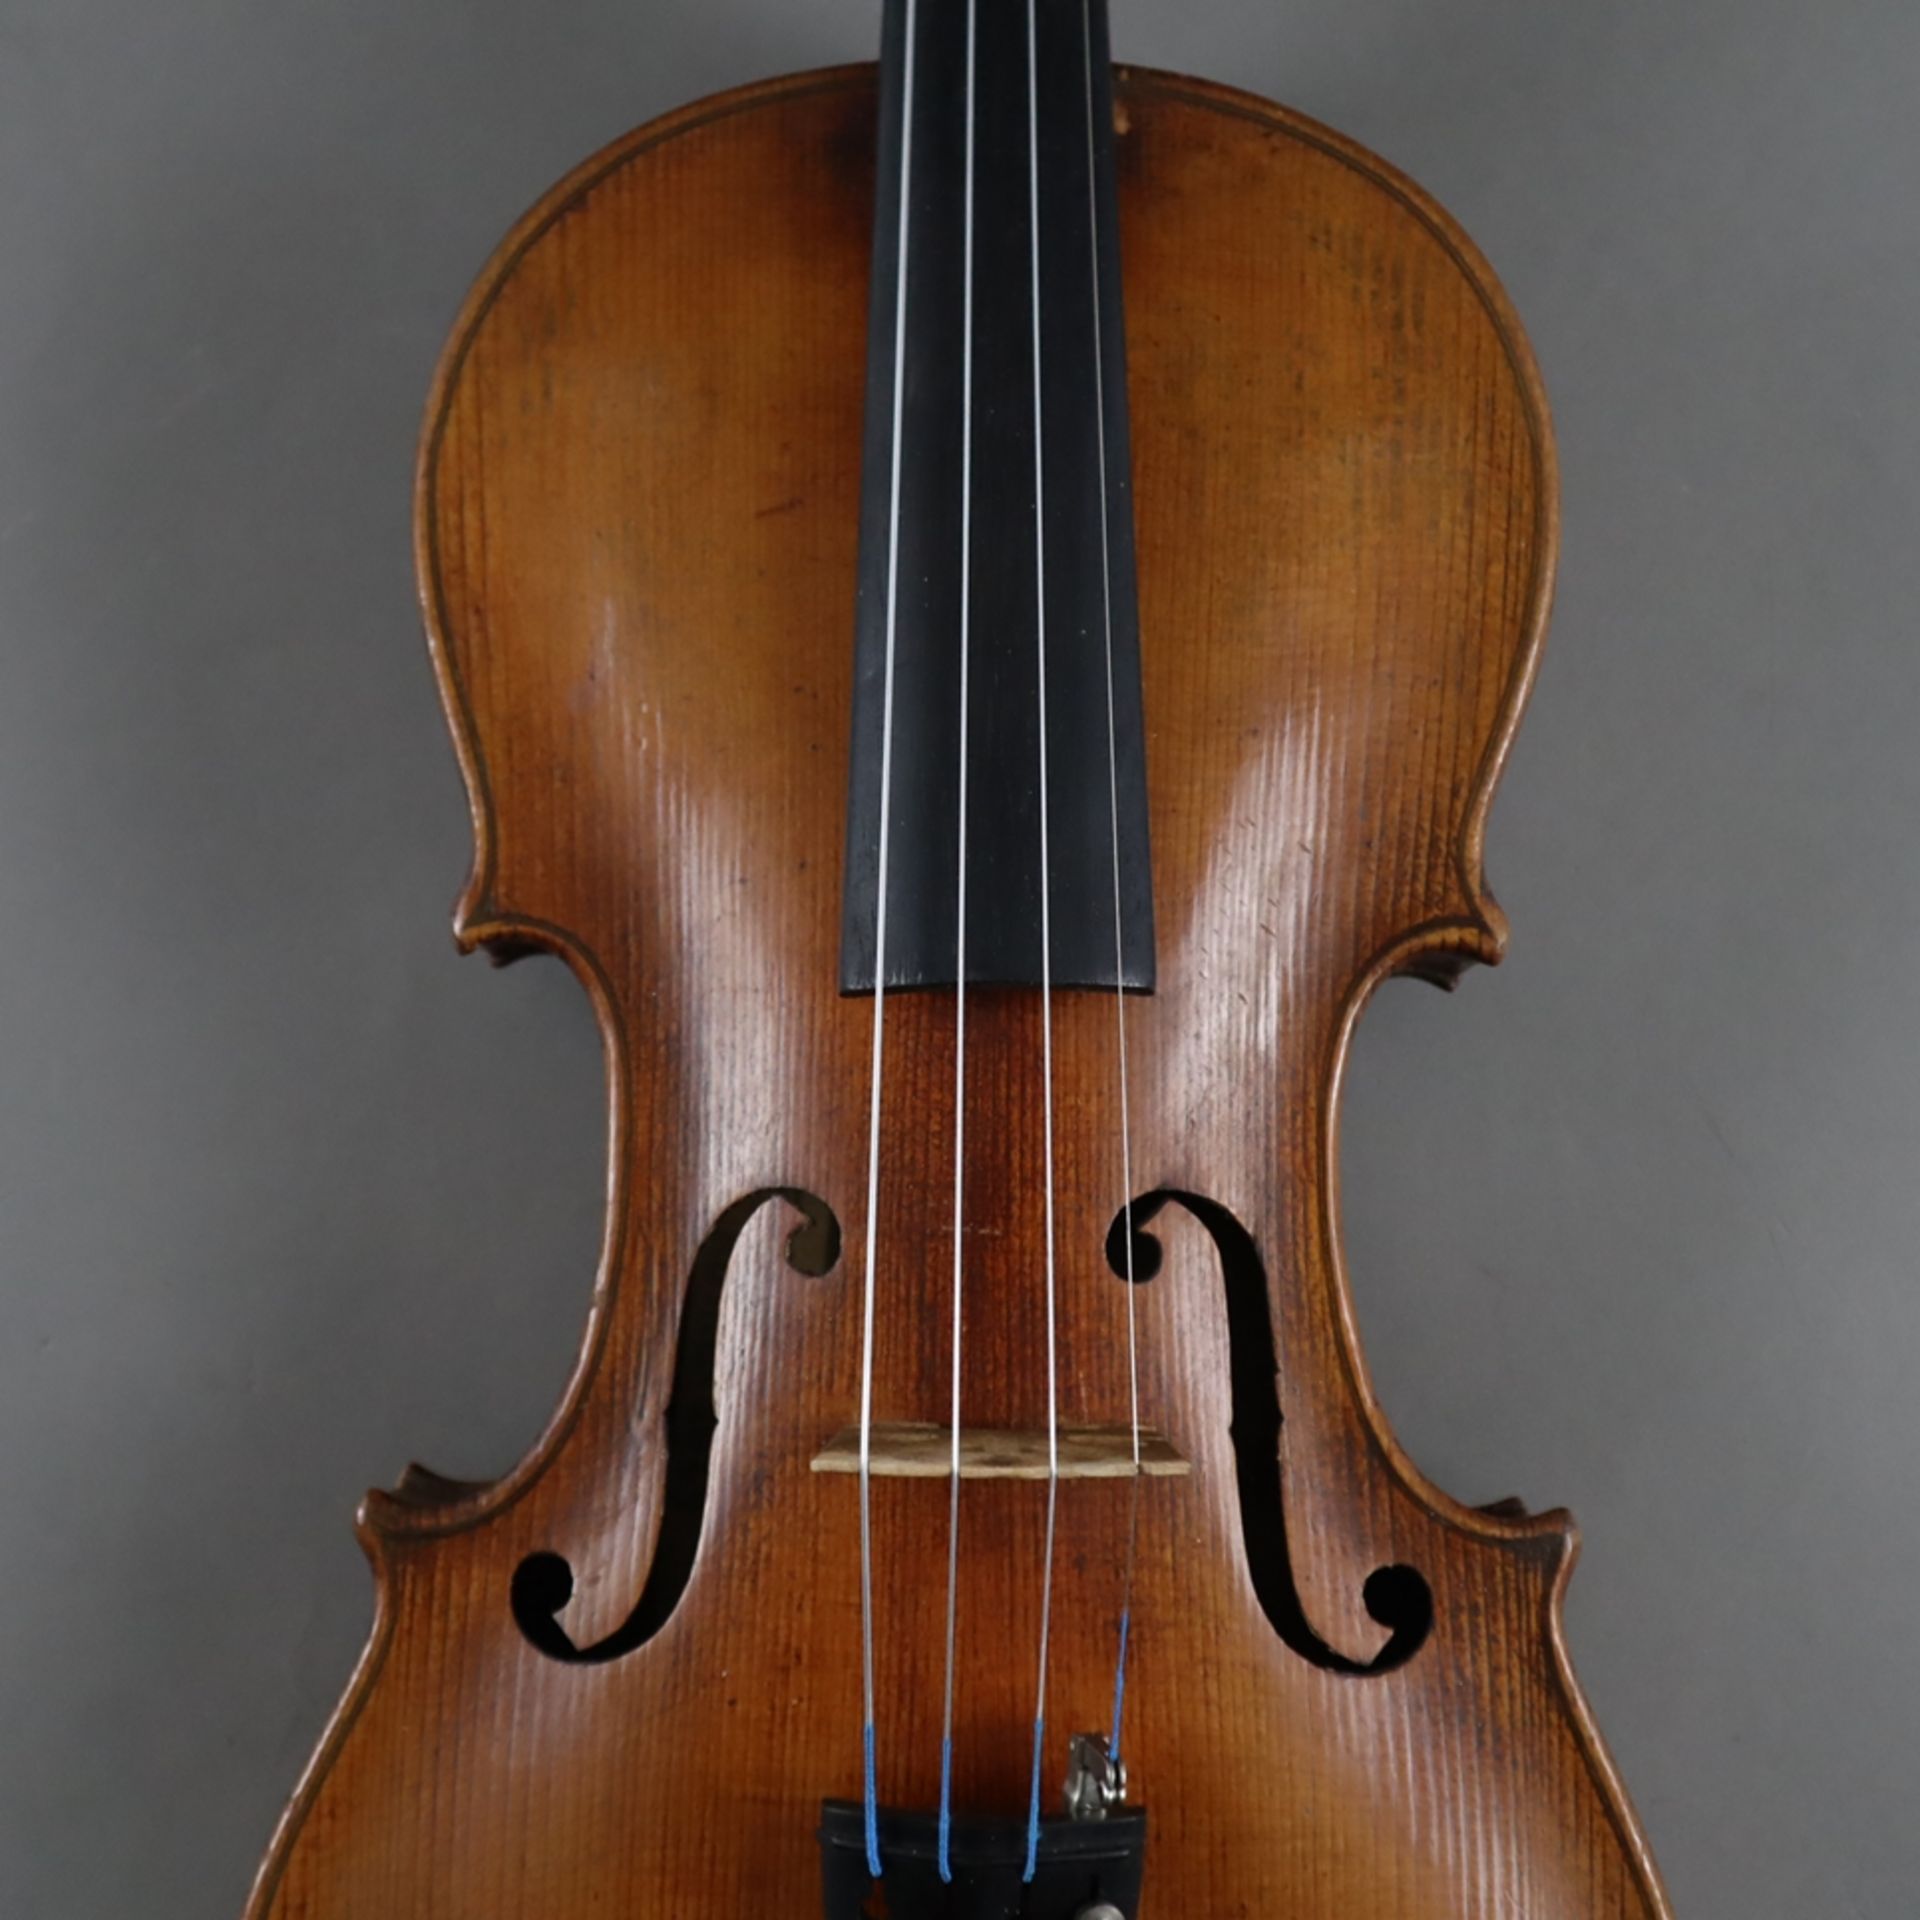 Schmale Geige - Italien, auf dem Faksimile-Etikett bezeichnet "Paolo Leonori / Roma 1949", einteili - Bild 3 aus 7